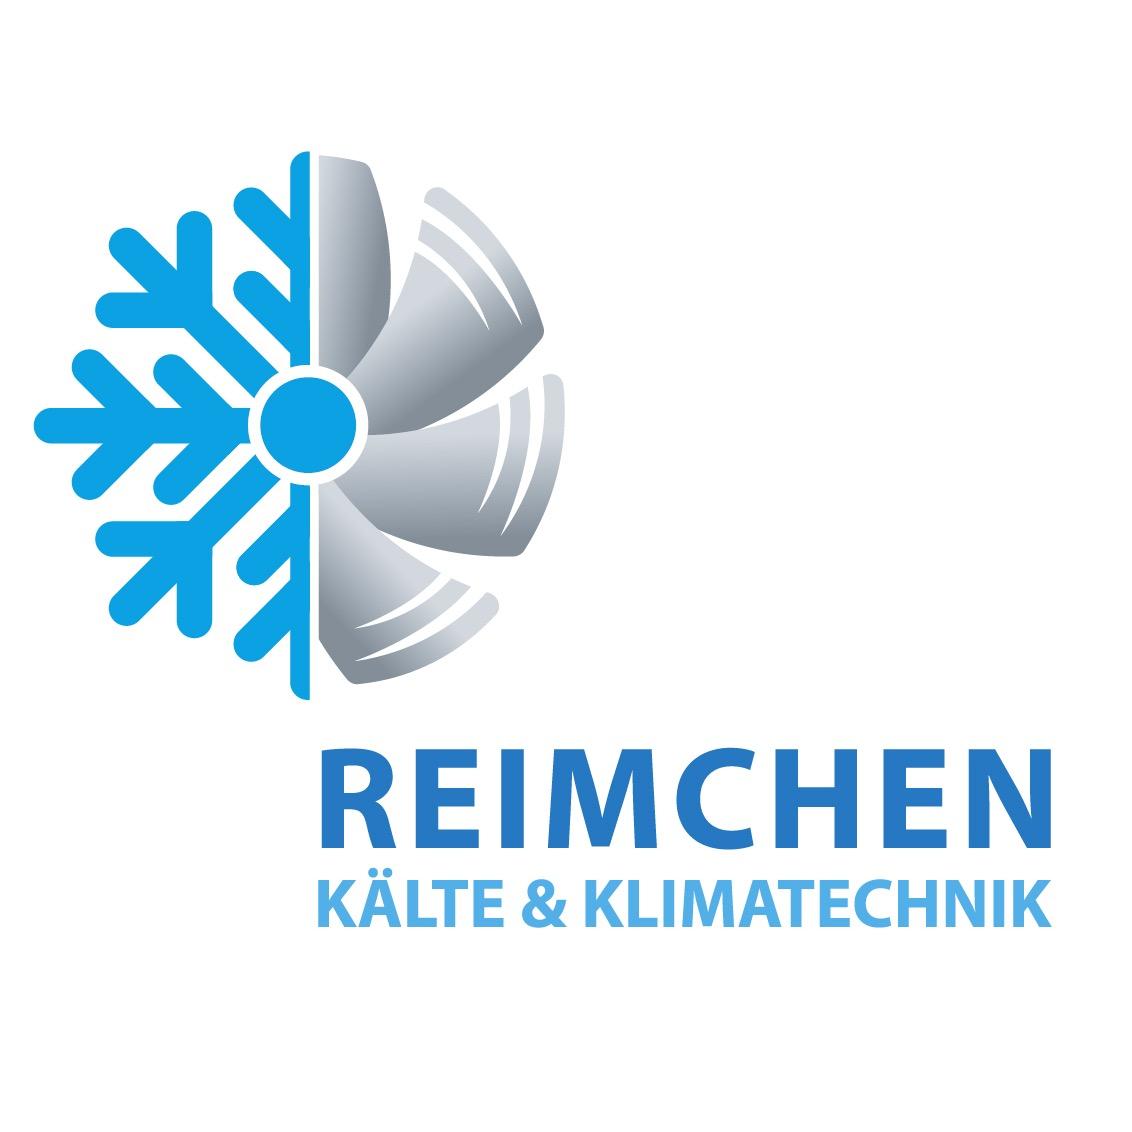 Reimchen Kälte & Klimatechnik